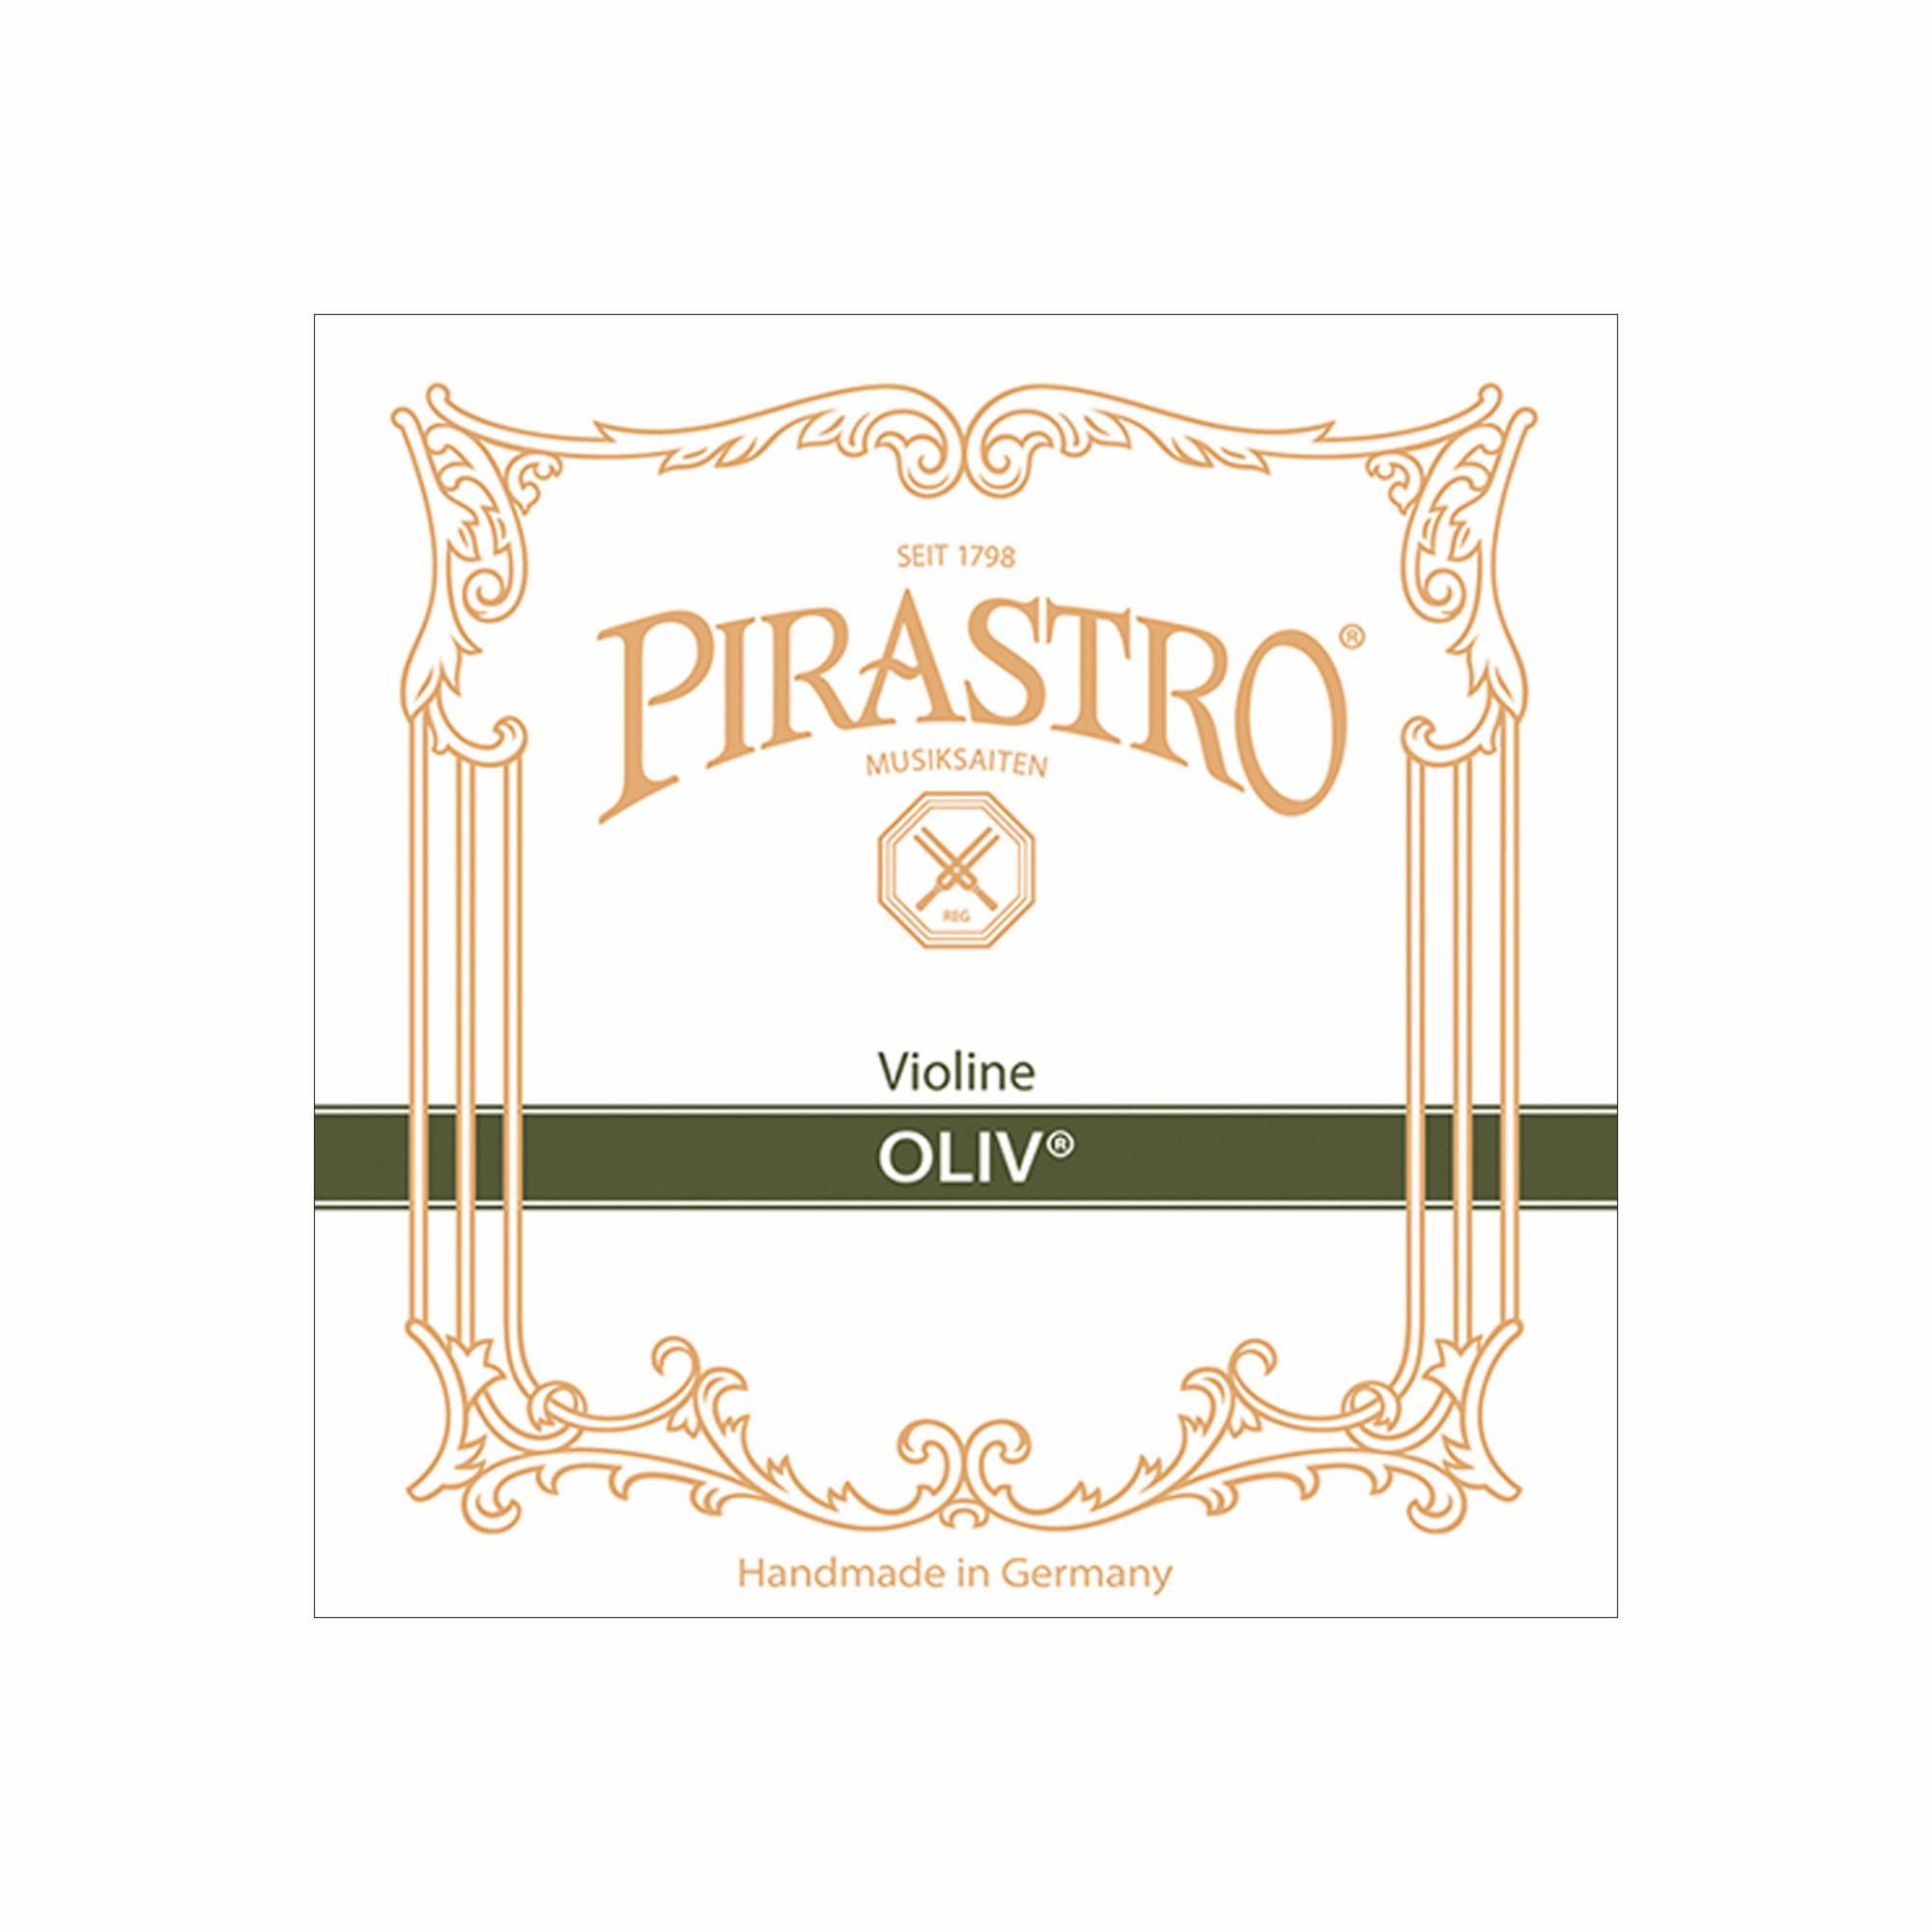 Pirastro Oliv Violin Strings | Southwest Strings